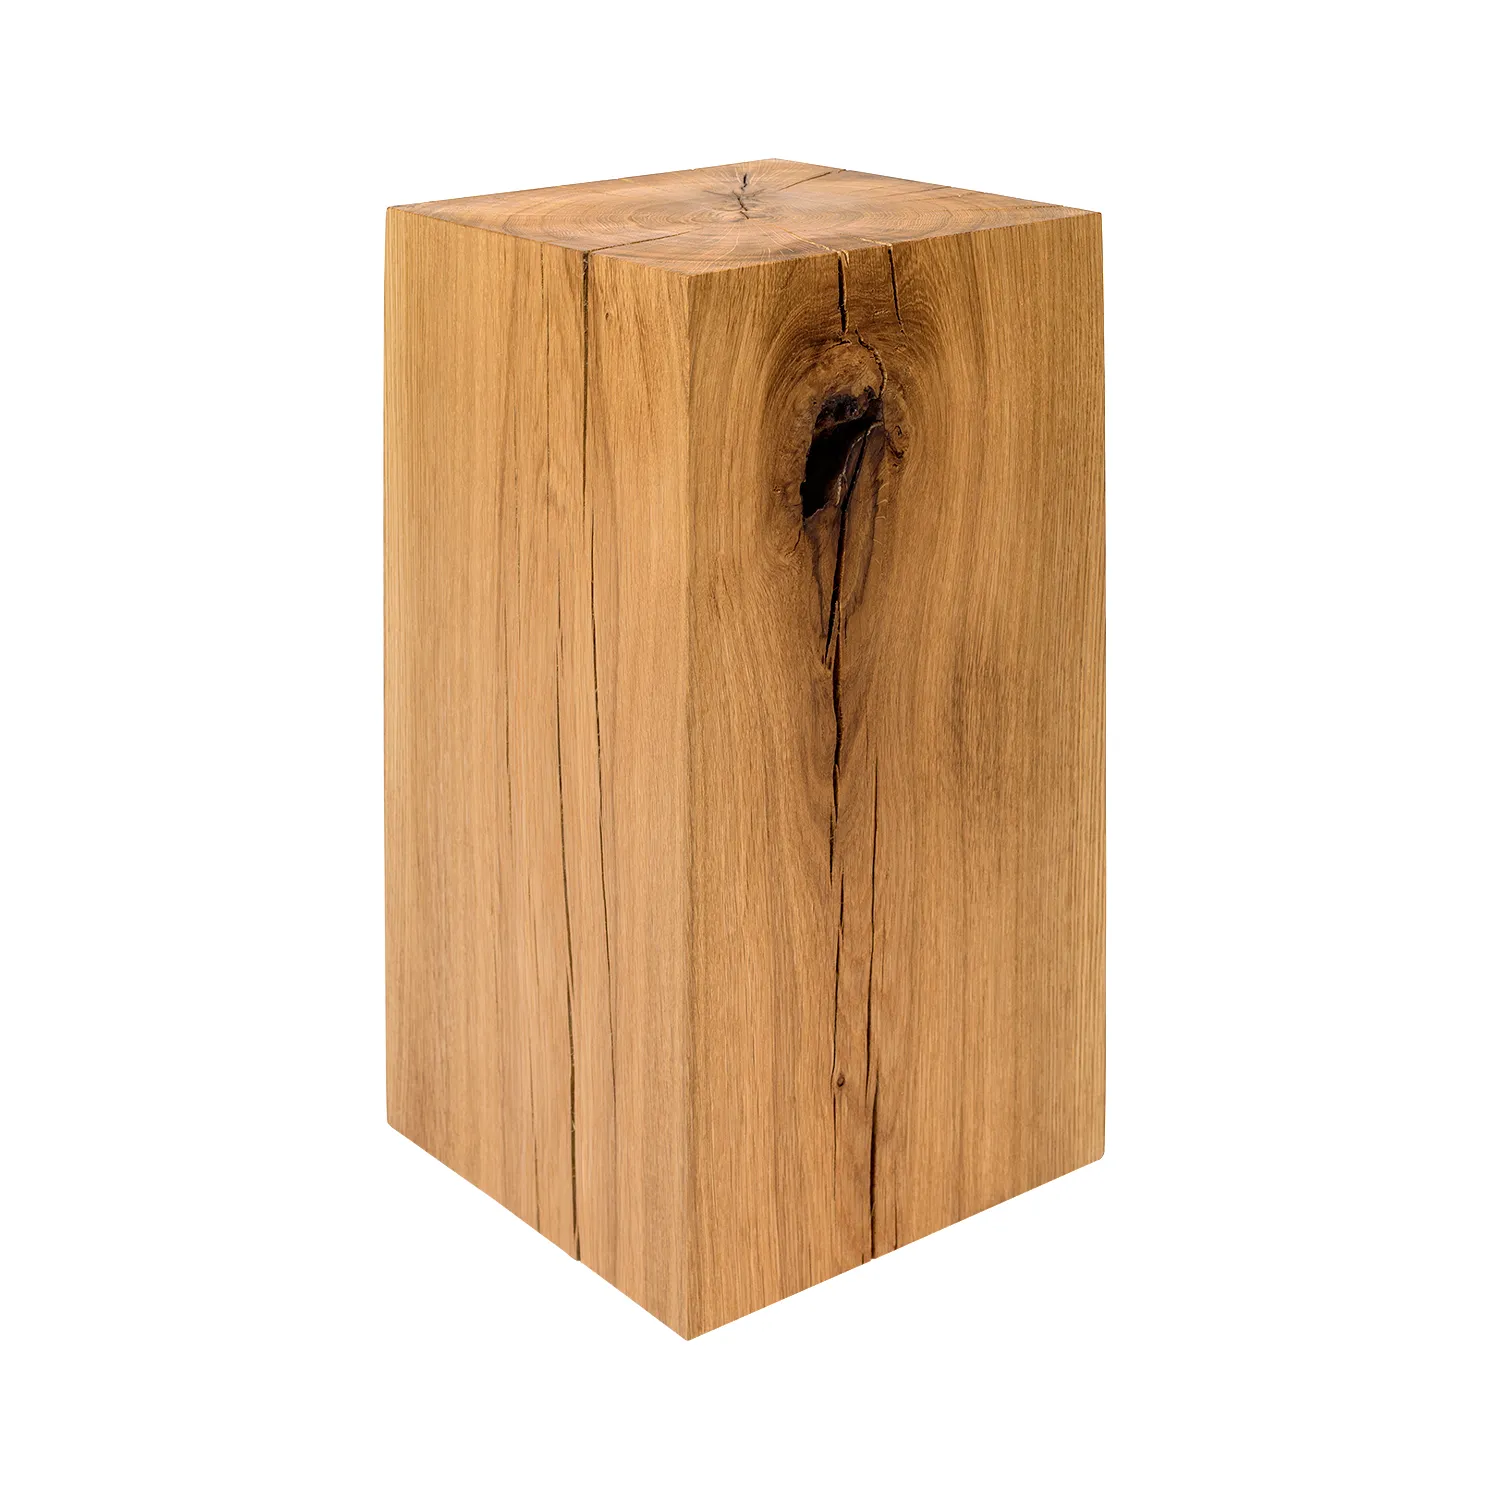 Holzblock aus Eiche Massivholz im 25x25 cm Format